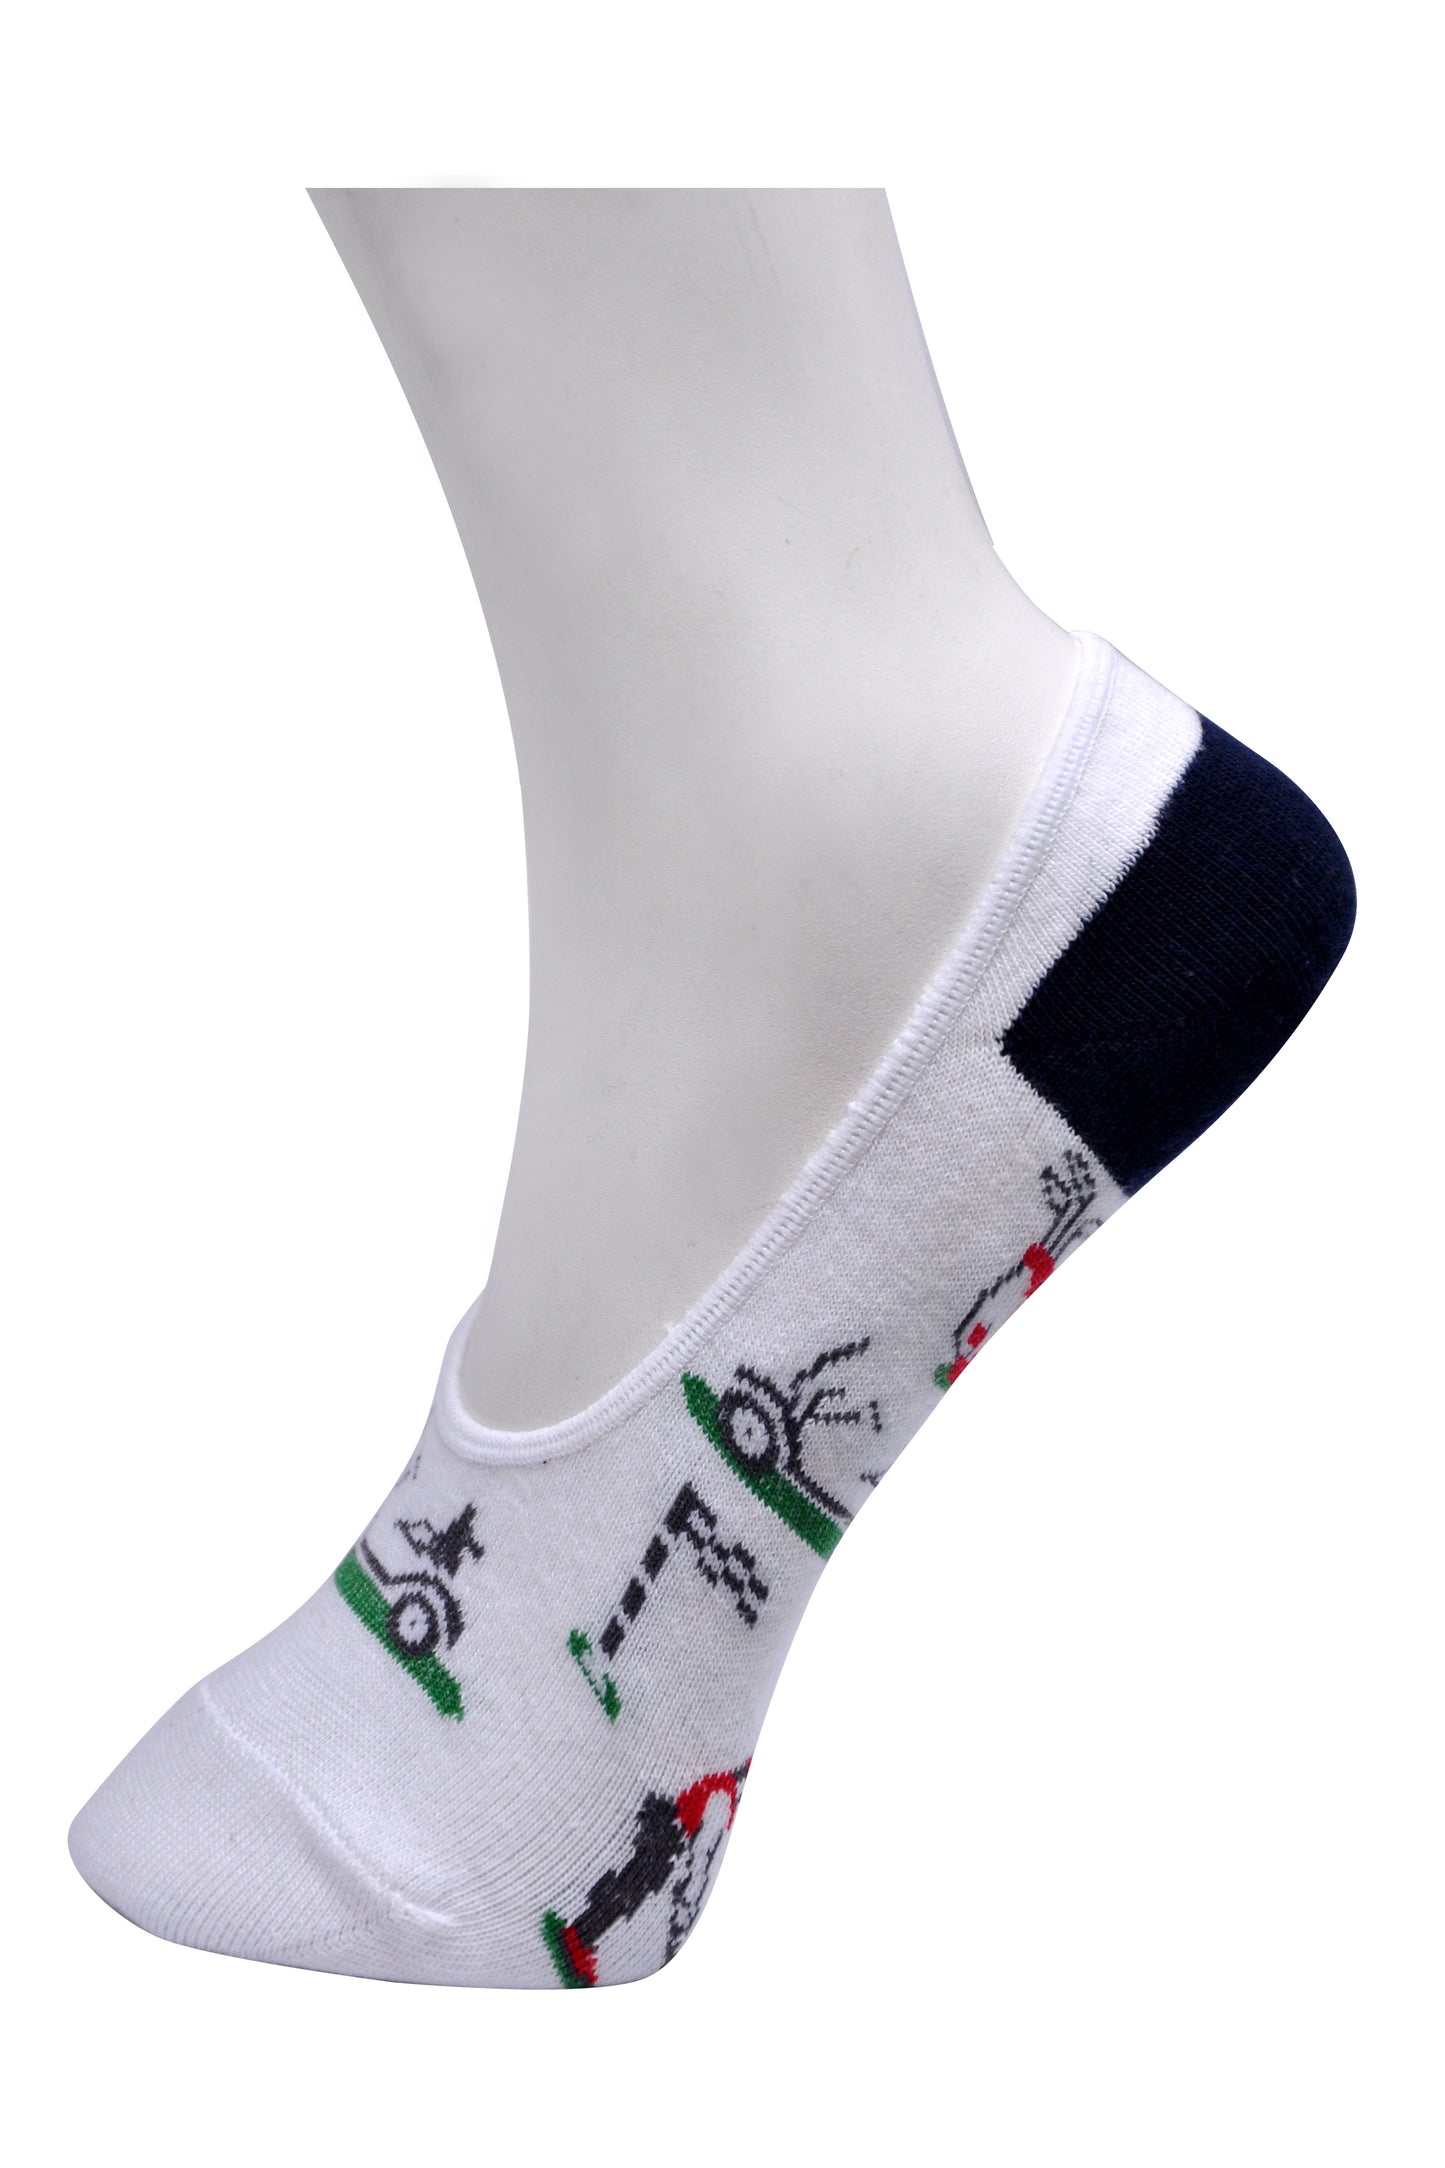 SWHF Organic Cotton No- Show Designer Socks -Golf - SWHF